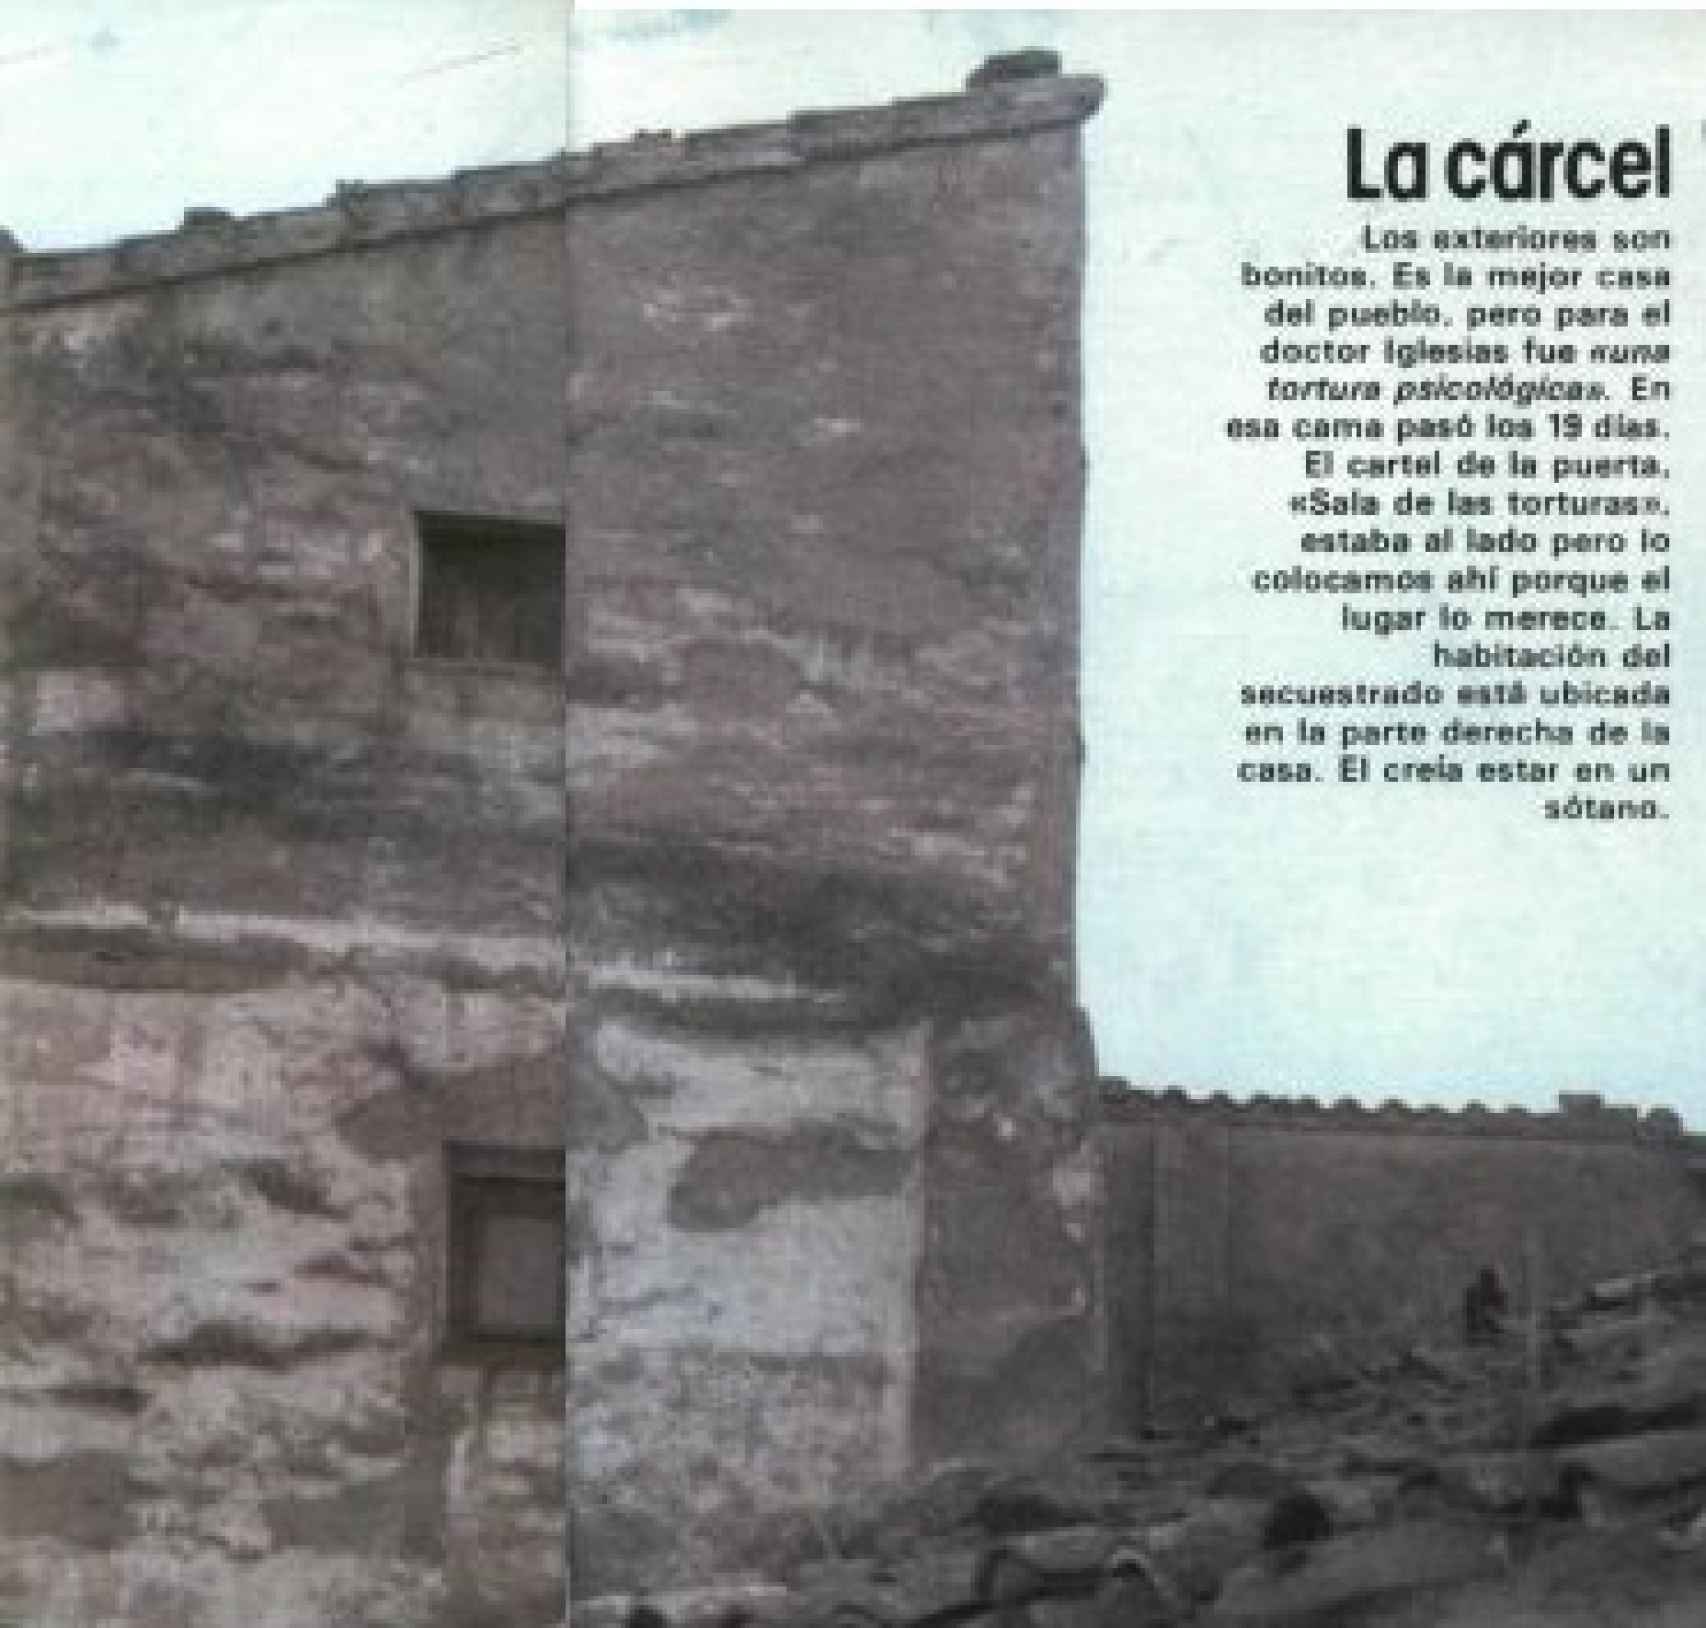 La casa en la que estuvo secuestrado Julio Iglesias Puga. Fotografía de 1982 cedida por la revista Interviú.